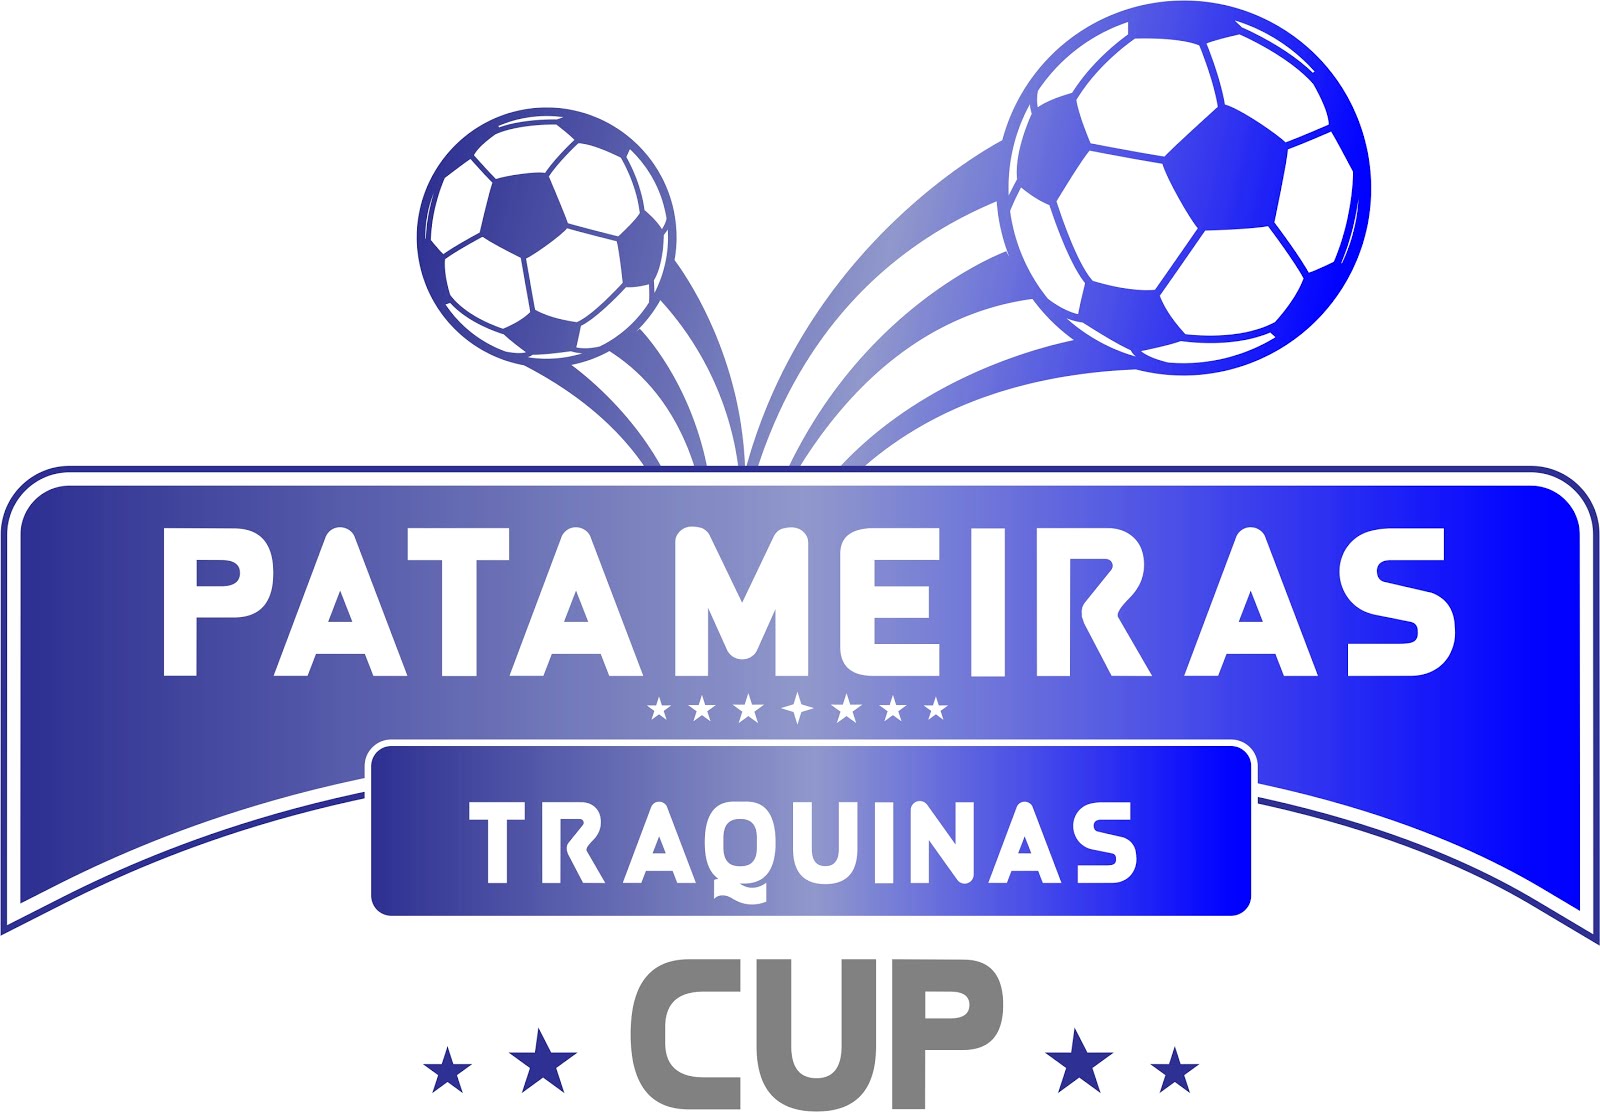 Patameiras Traquinas Cup